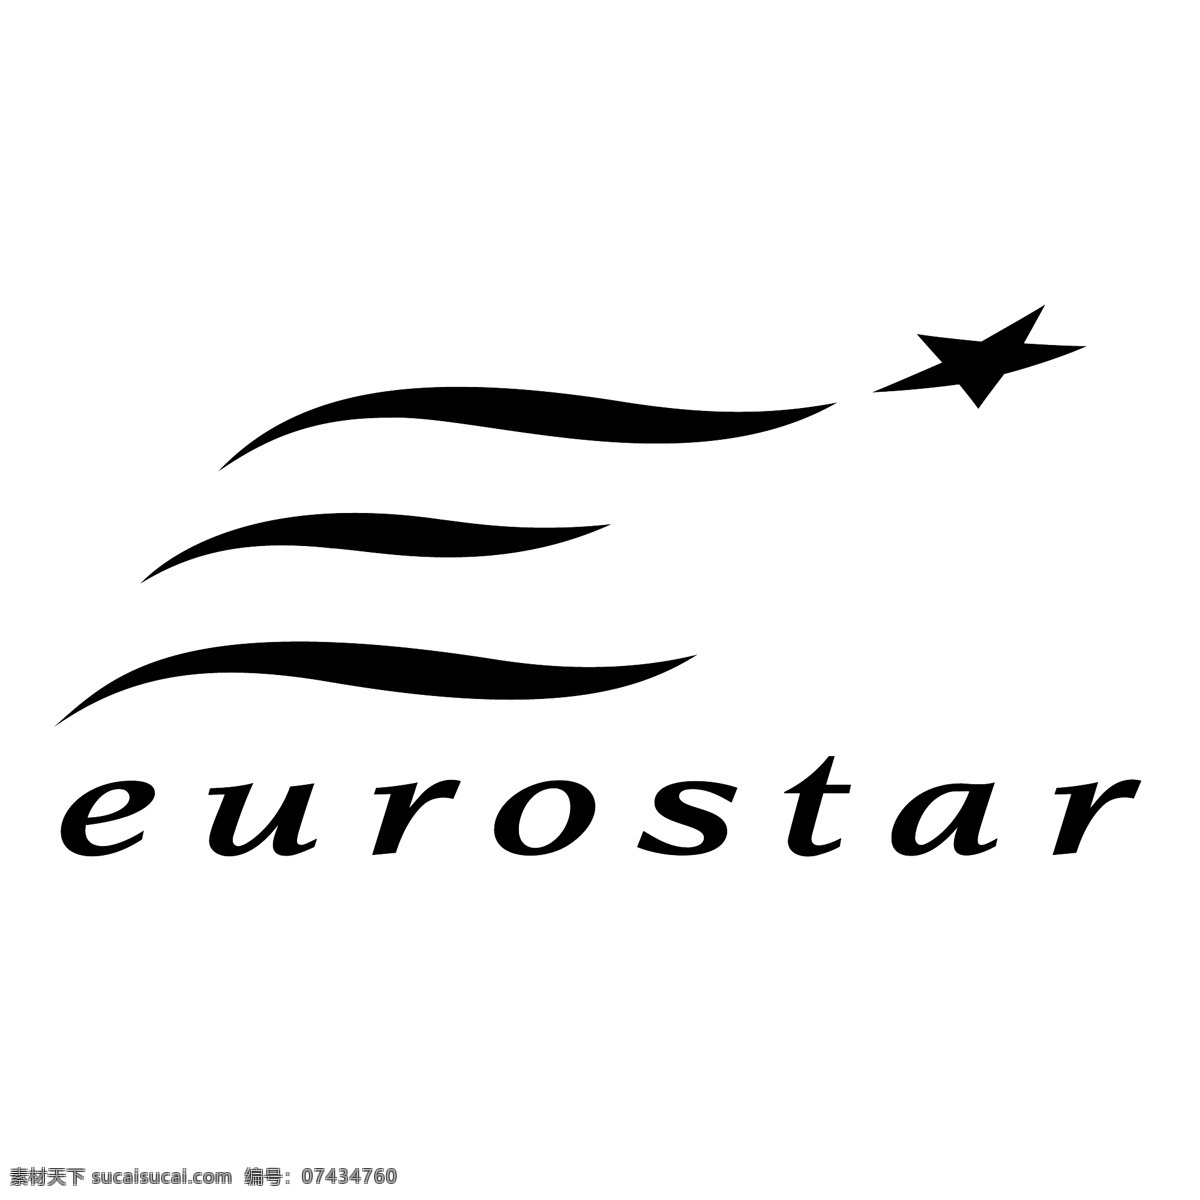 欧洲 之星 欧洲之星 欧洲之星1 矢量图 其他矢量图